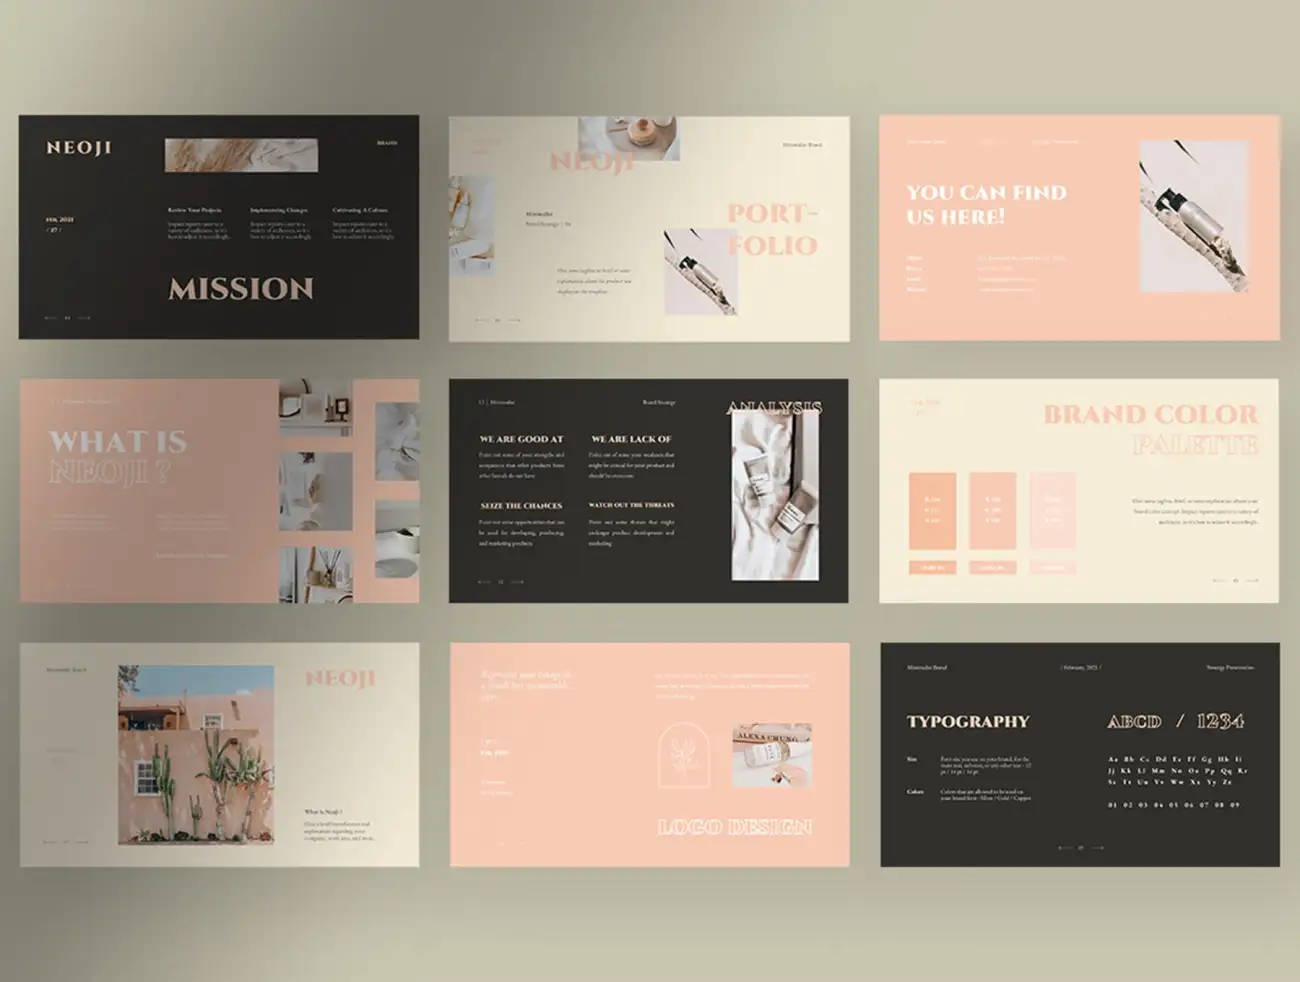 30屏极简主义品牌营销策划介绍PPT展示模板 Neoji – Soft Pastel Minimalist Brand Strategy Presentation插图11